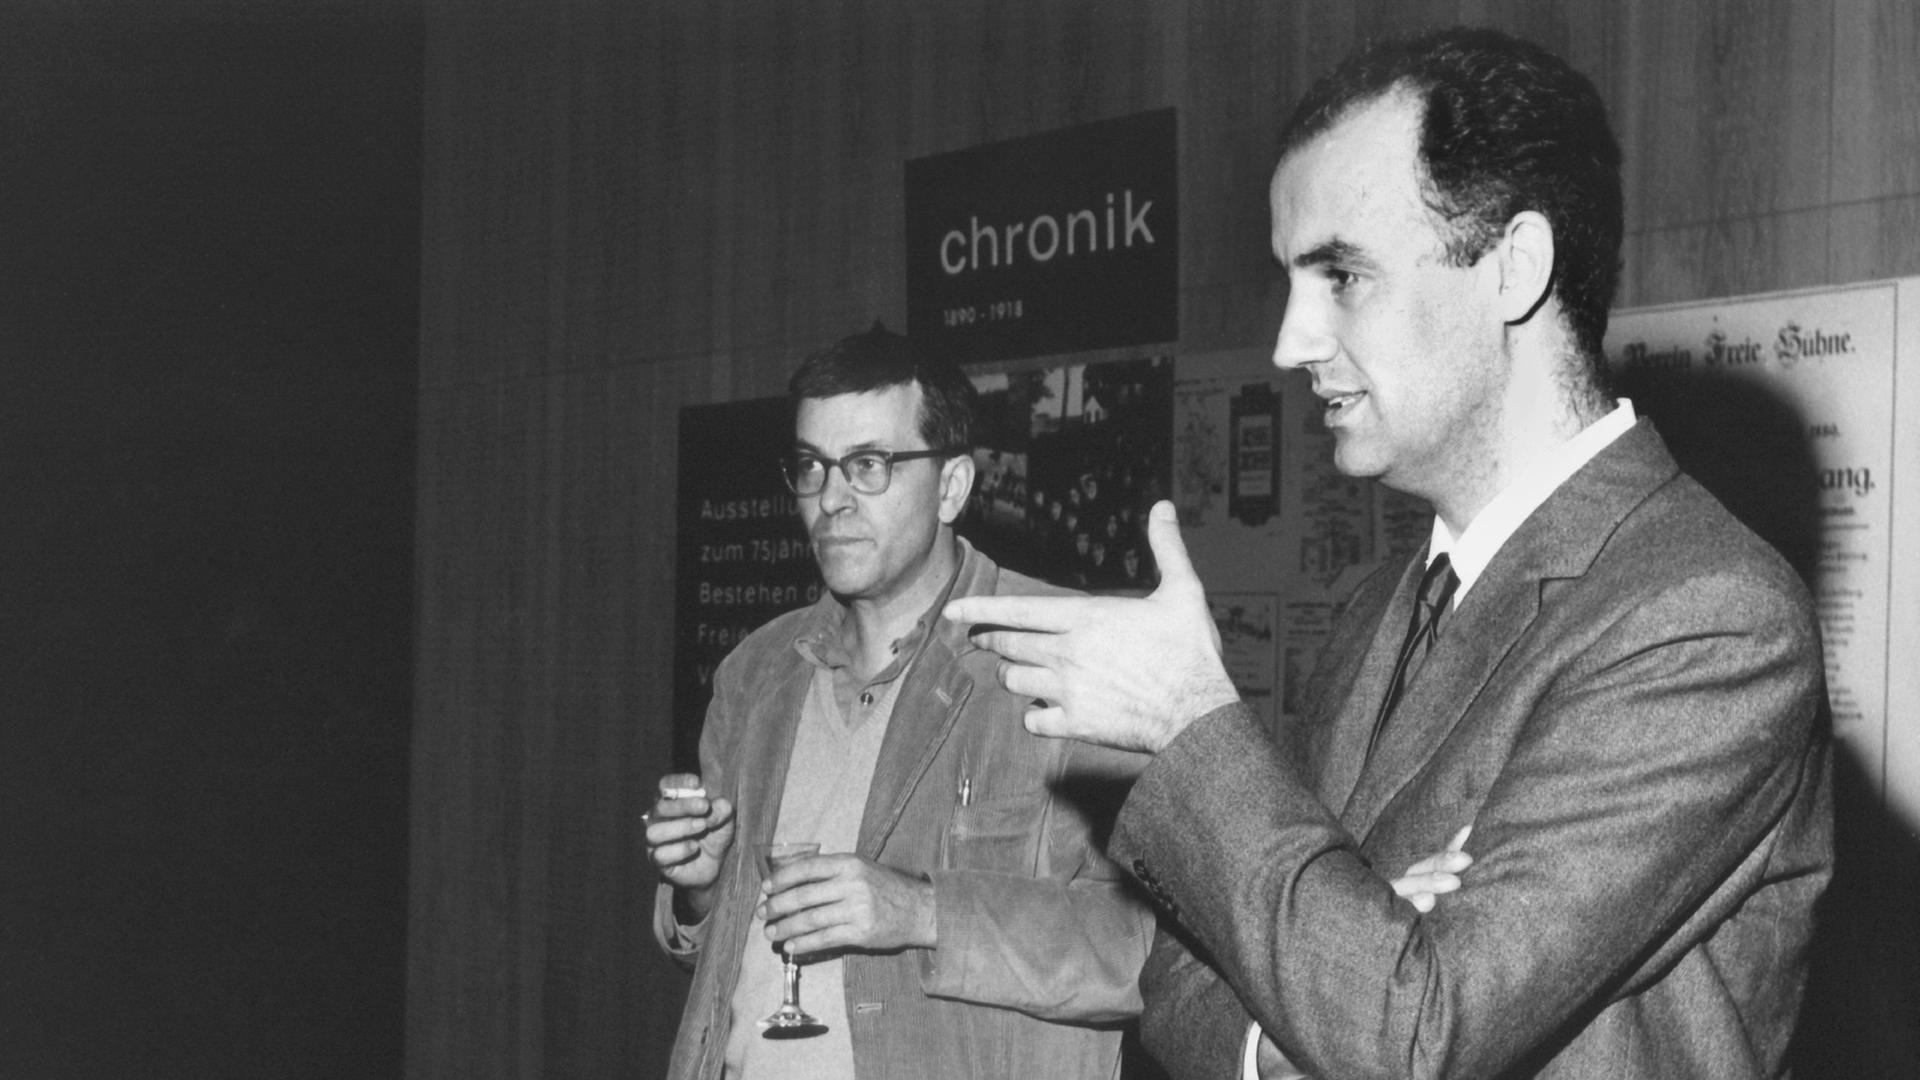 Der Schriftsteller, Maler und Filmregisseur Peter Weiss (links, "Die Ästhetik des Widerstands") und der Komponist Luigi Nono (rechts) während einer Pressekonferenz am 17. Oktober 1965 in der Freien Volksbühne in Berlin.